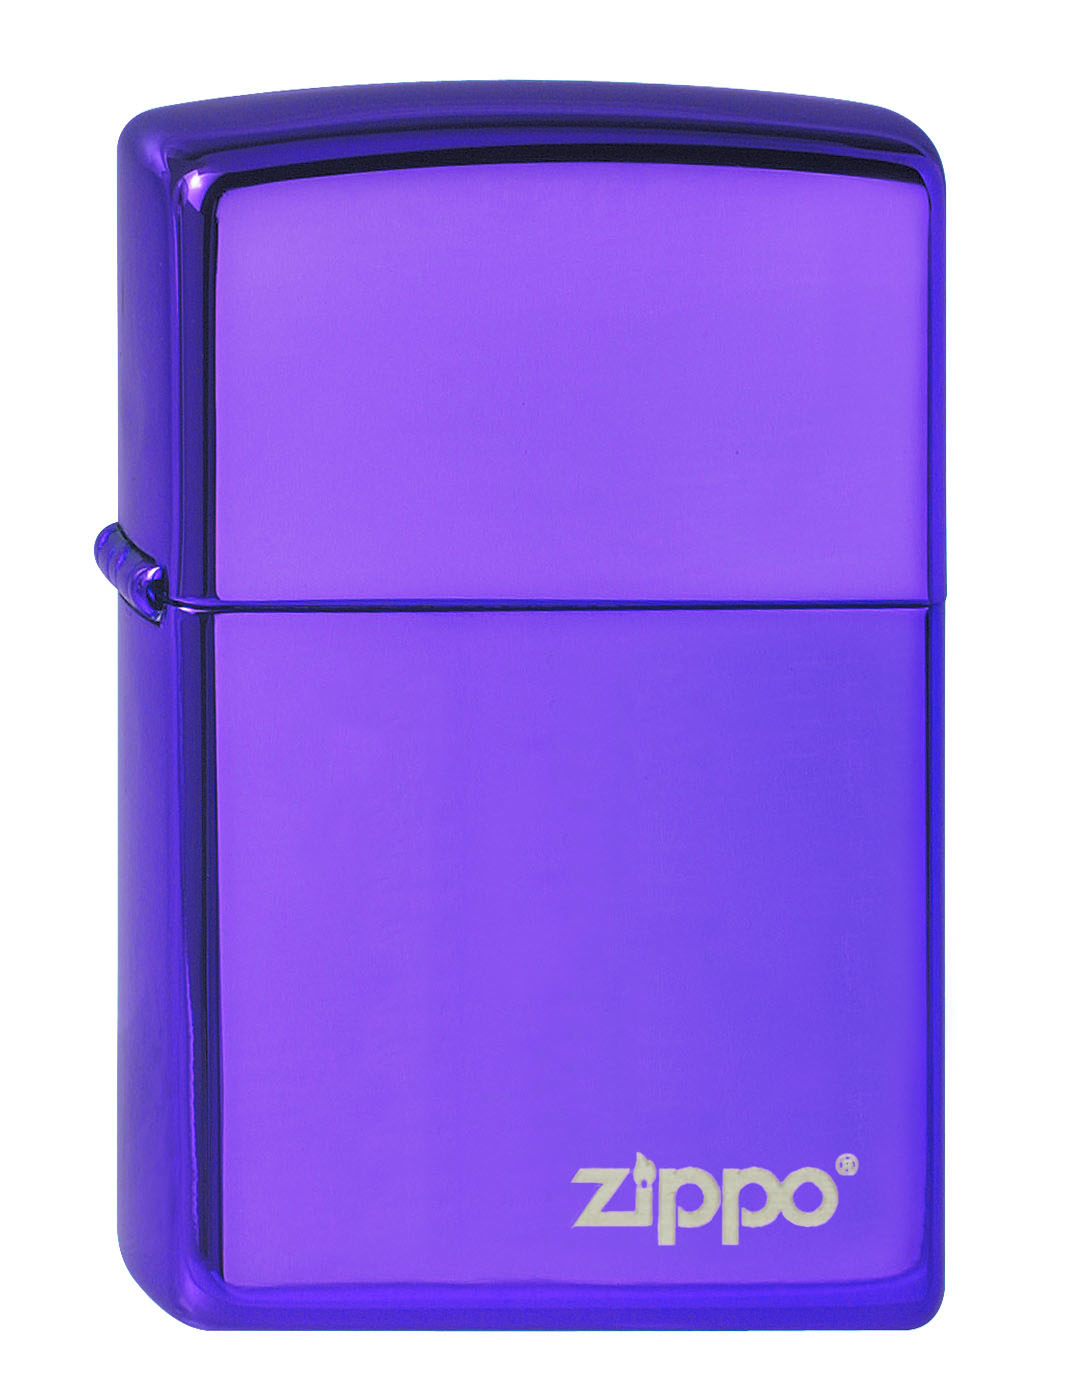 Zippo Abyss with zippo logo